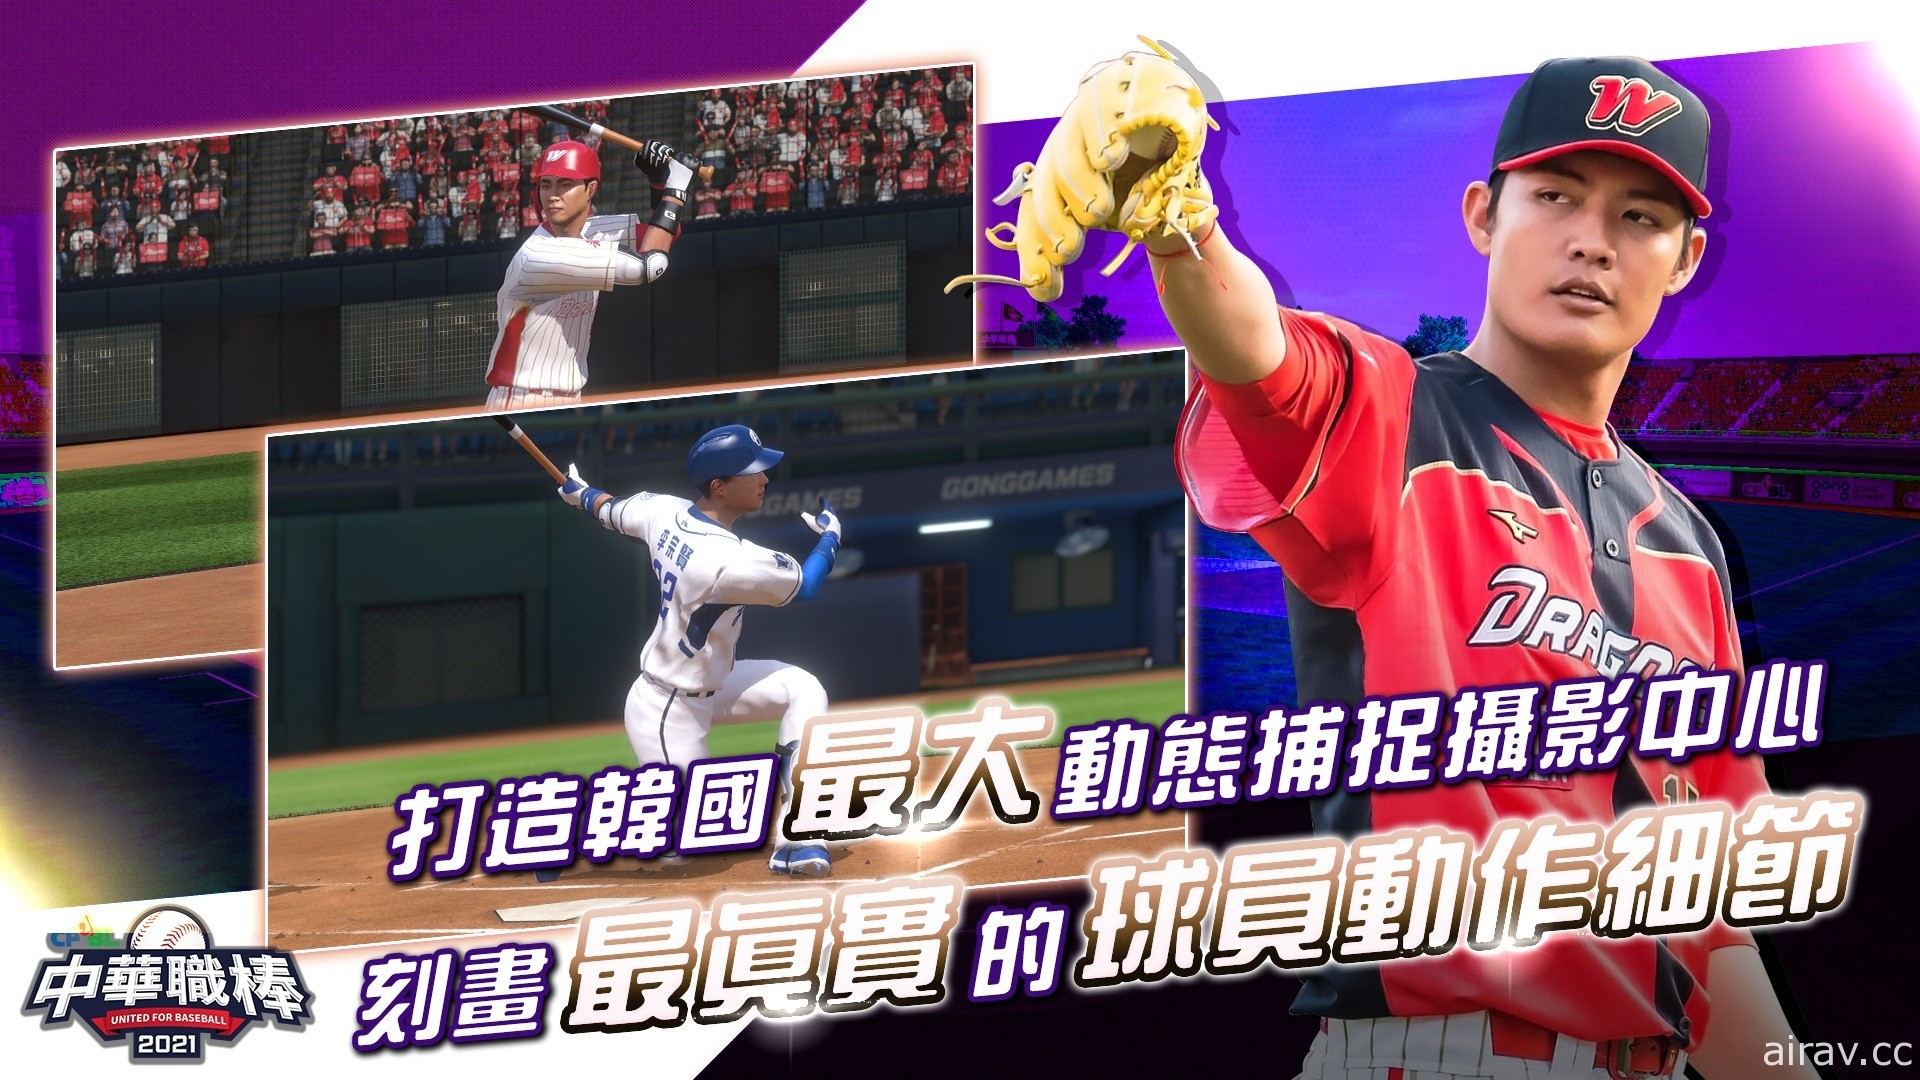 擬真棒球遊戲《CPBL 中華職棒 2021》雙平台上市 以動態捕捉技術重現真實球賽